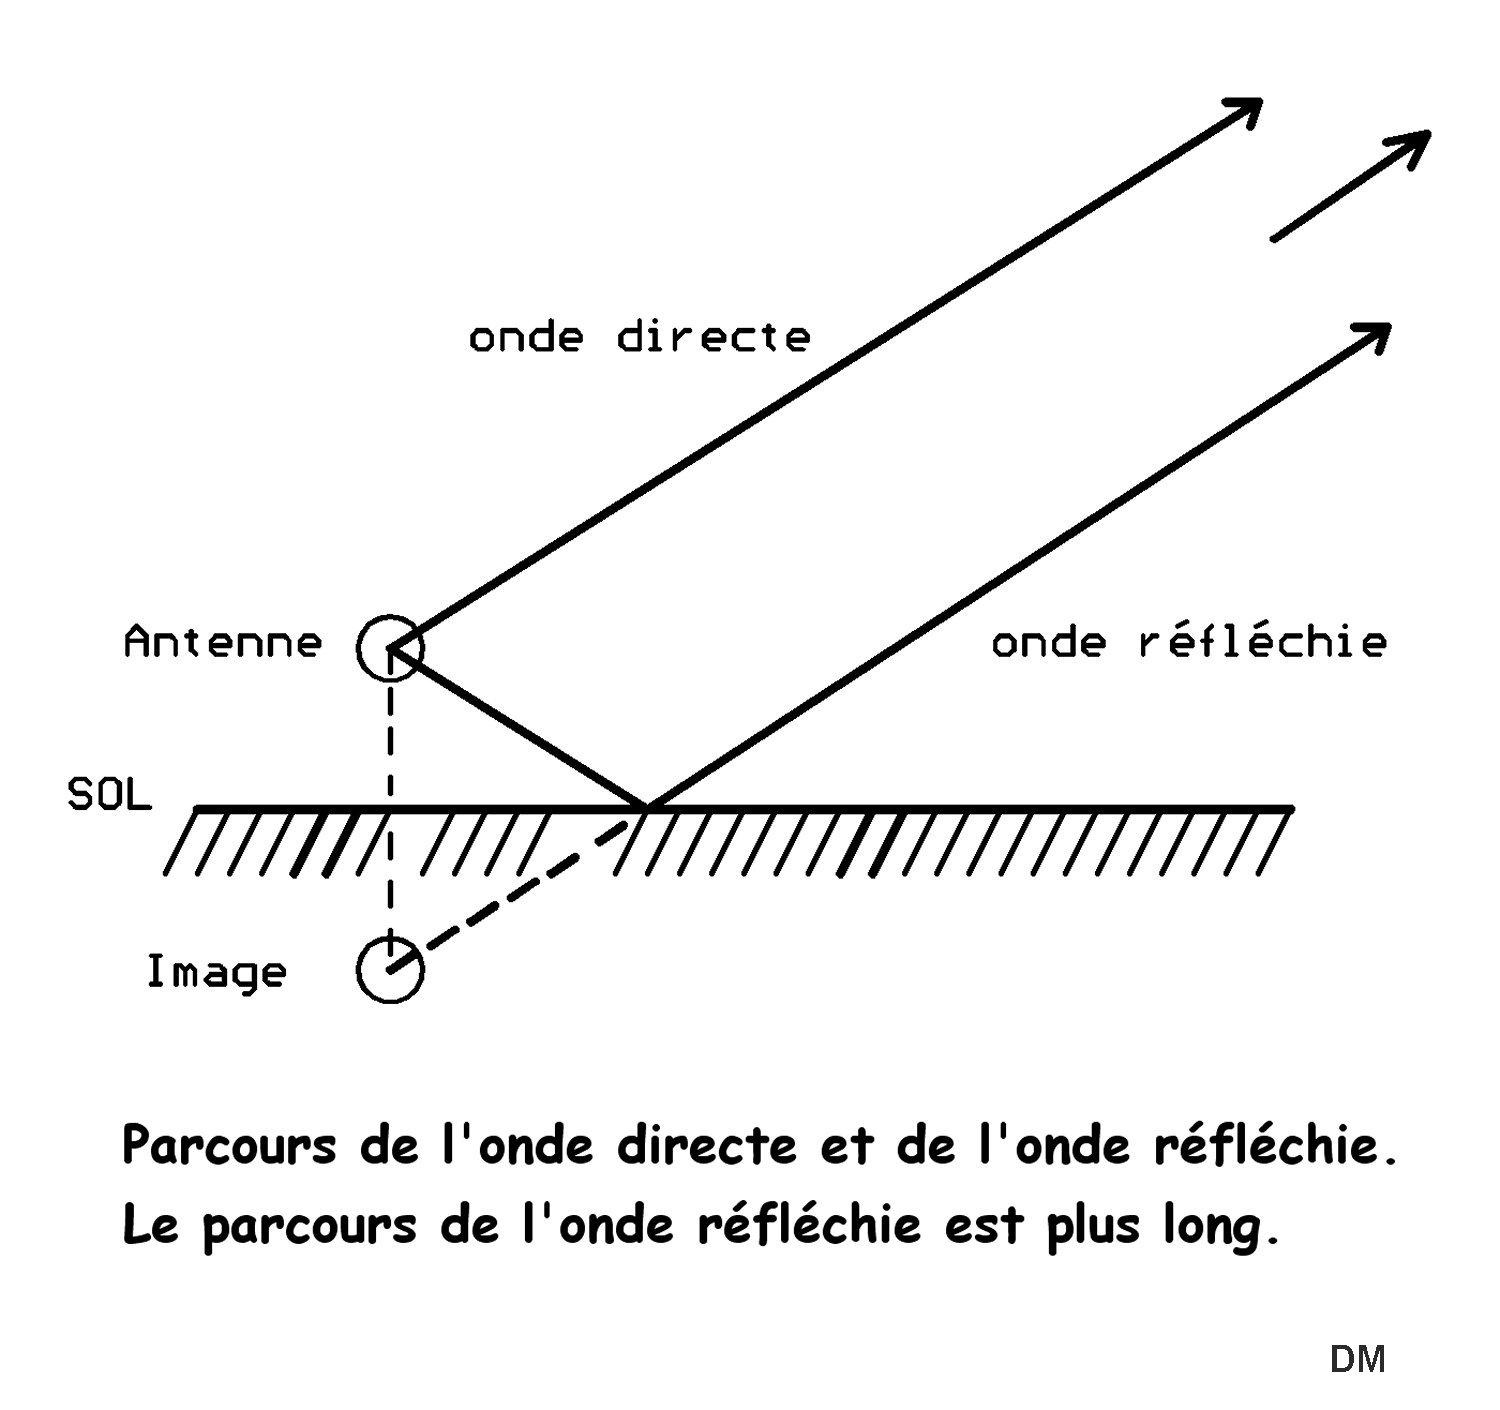 Figure 1 ondes directe et reflechie